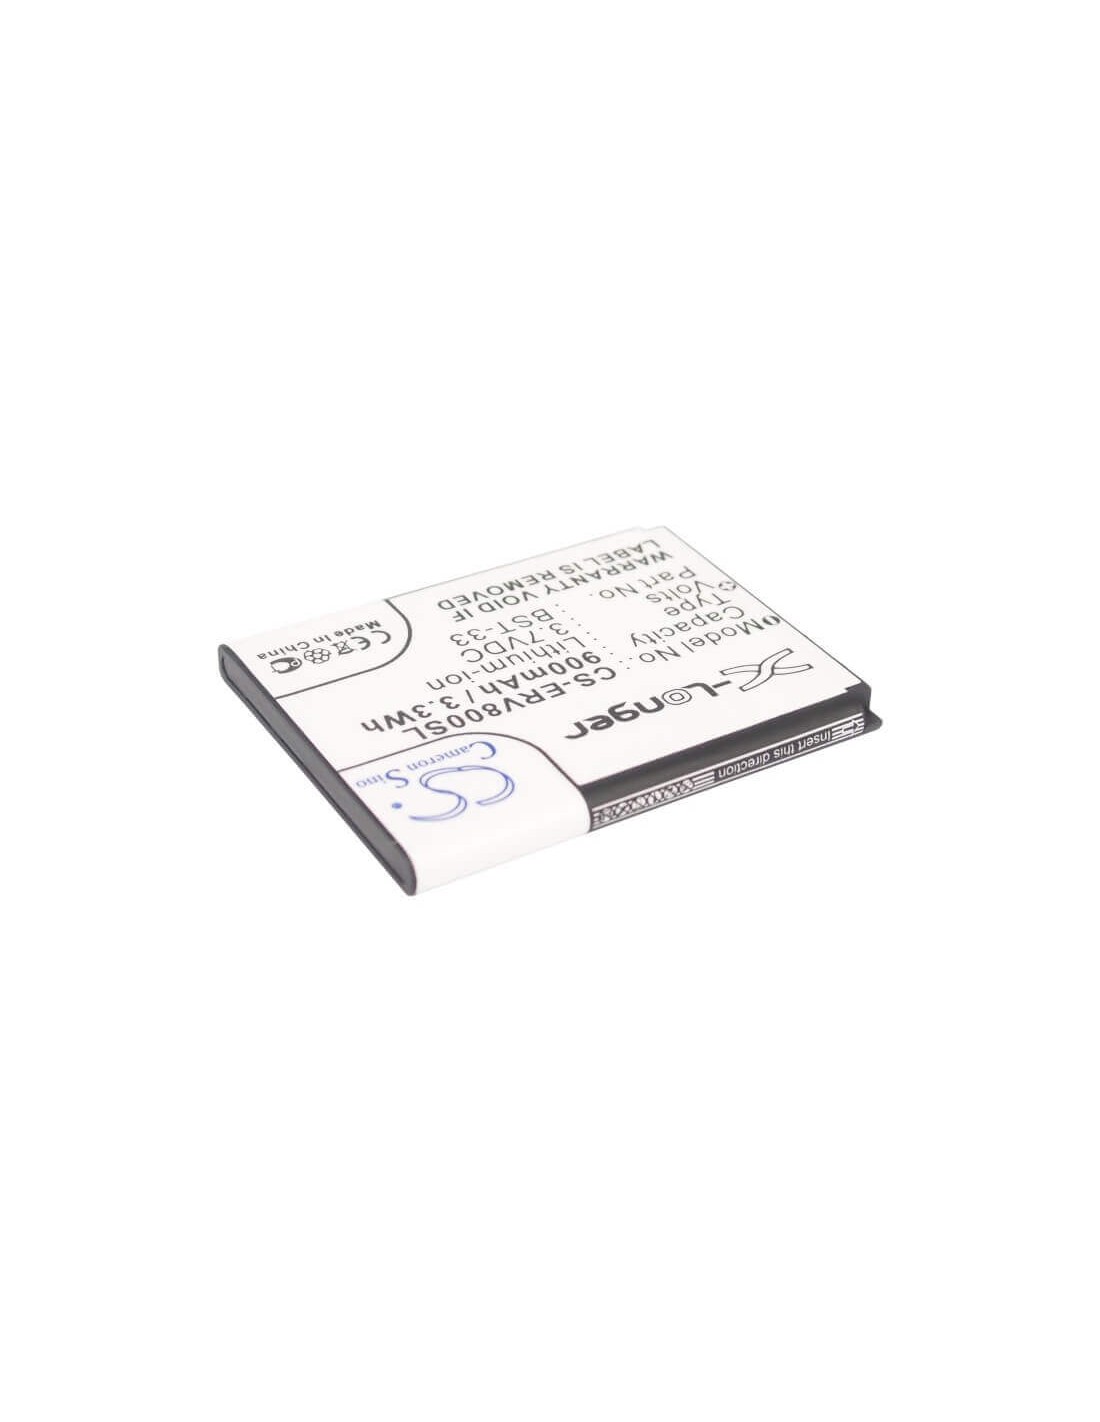 Battery for Sony Ericsson Z800, V800i, V800 3.7V, 900mAh - 3.33Wh